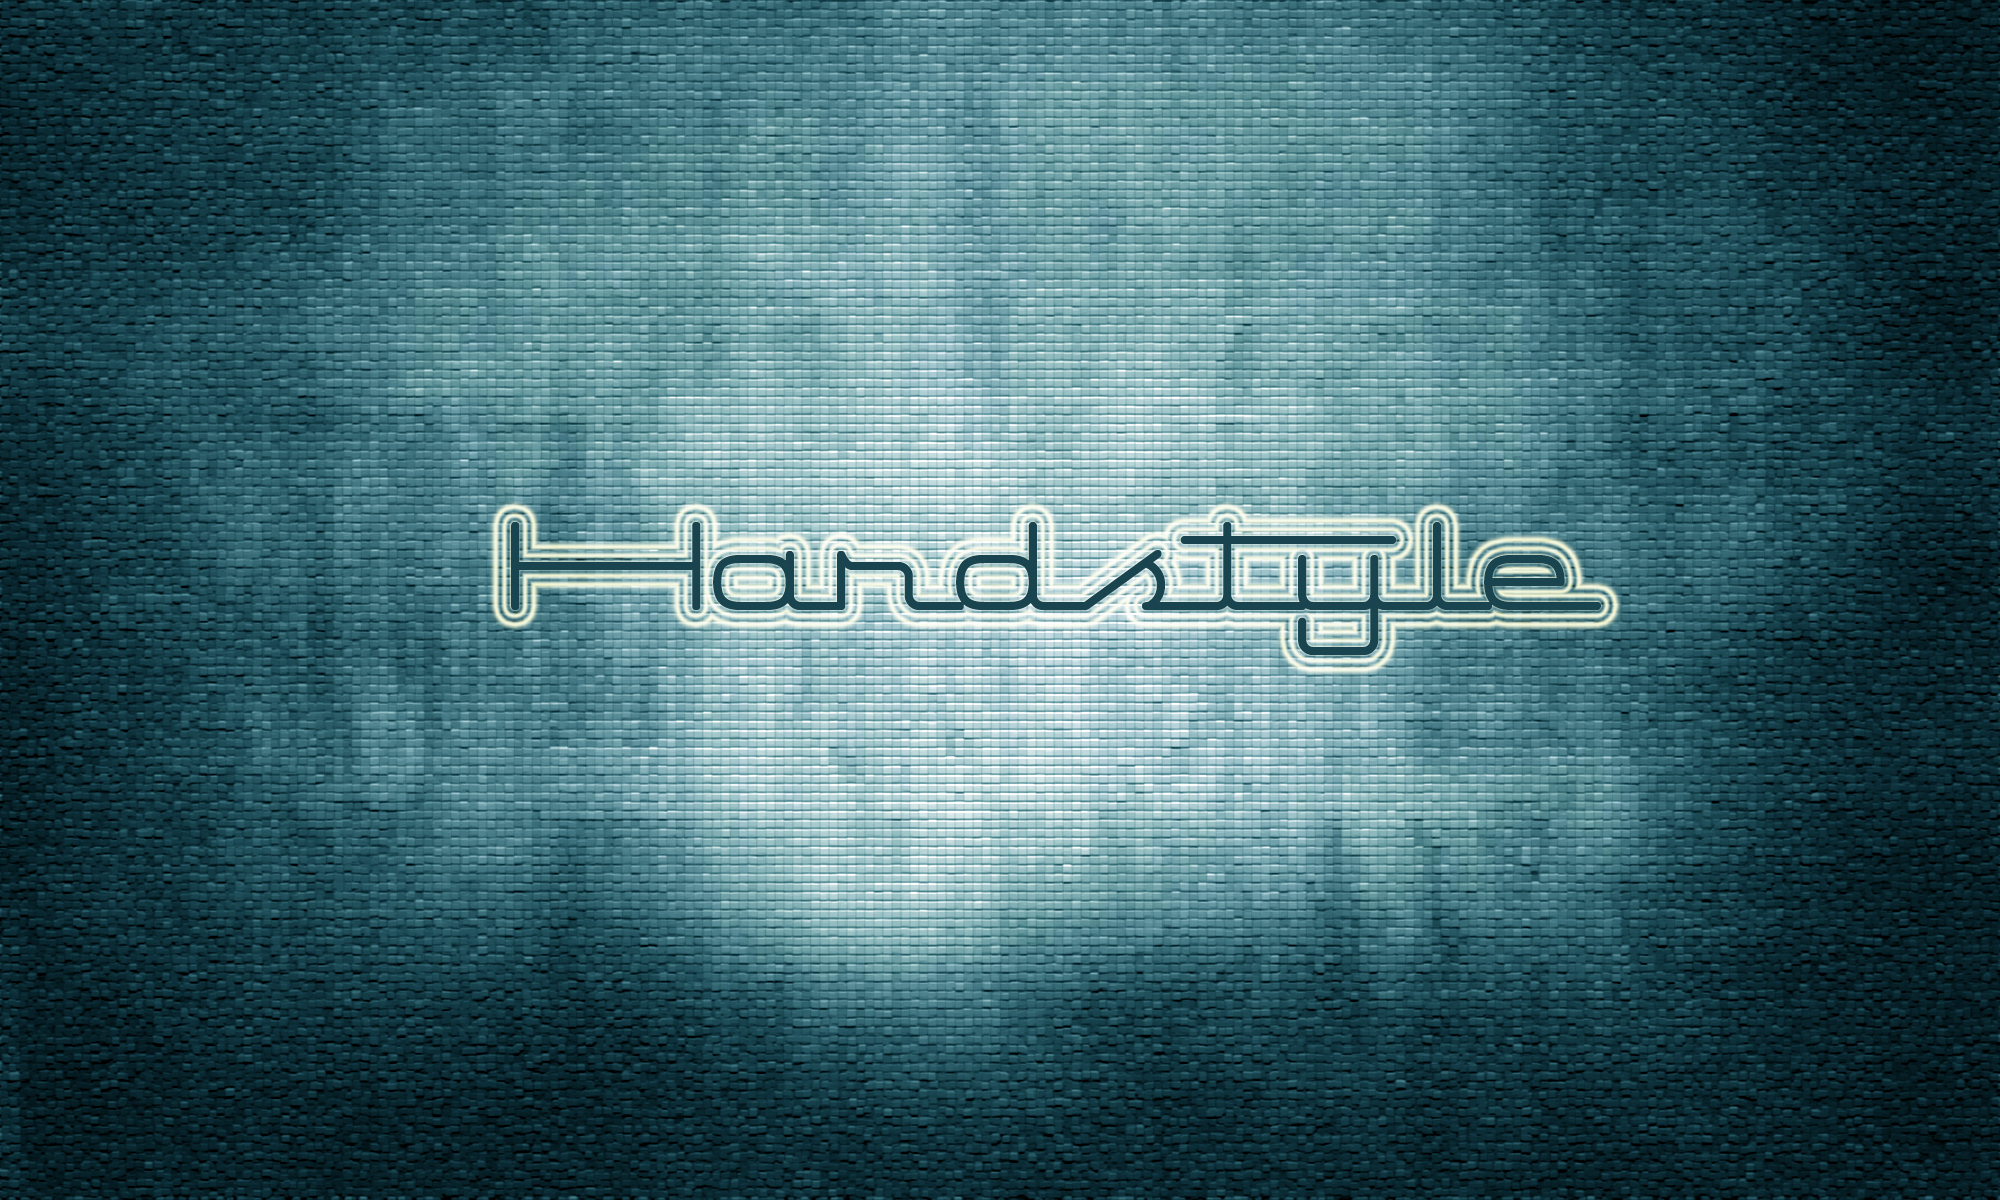 Фото хардстайл hardstyle текстура - бесплатные картинки на Fonwall